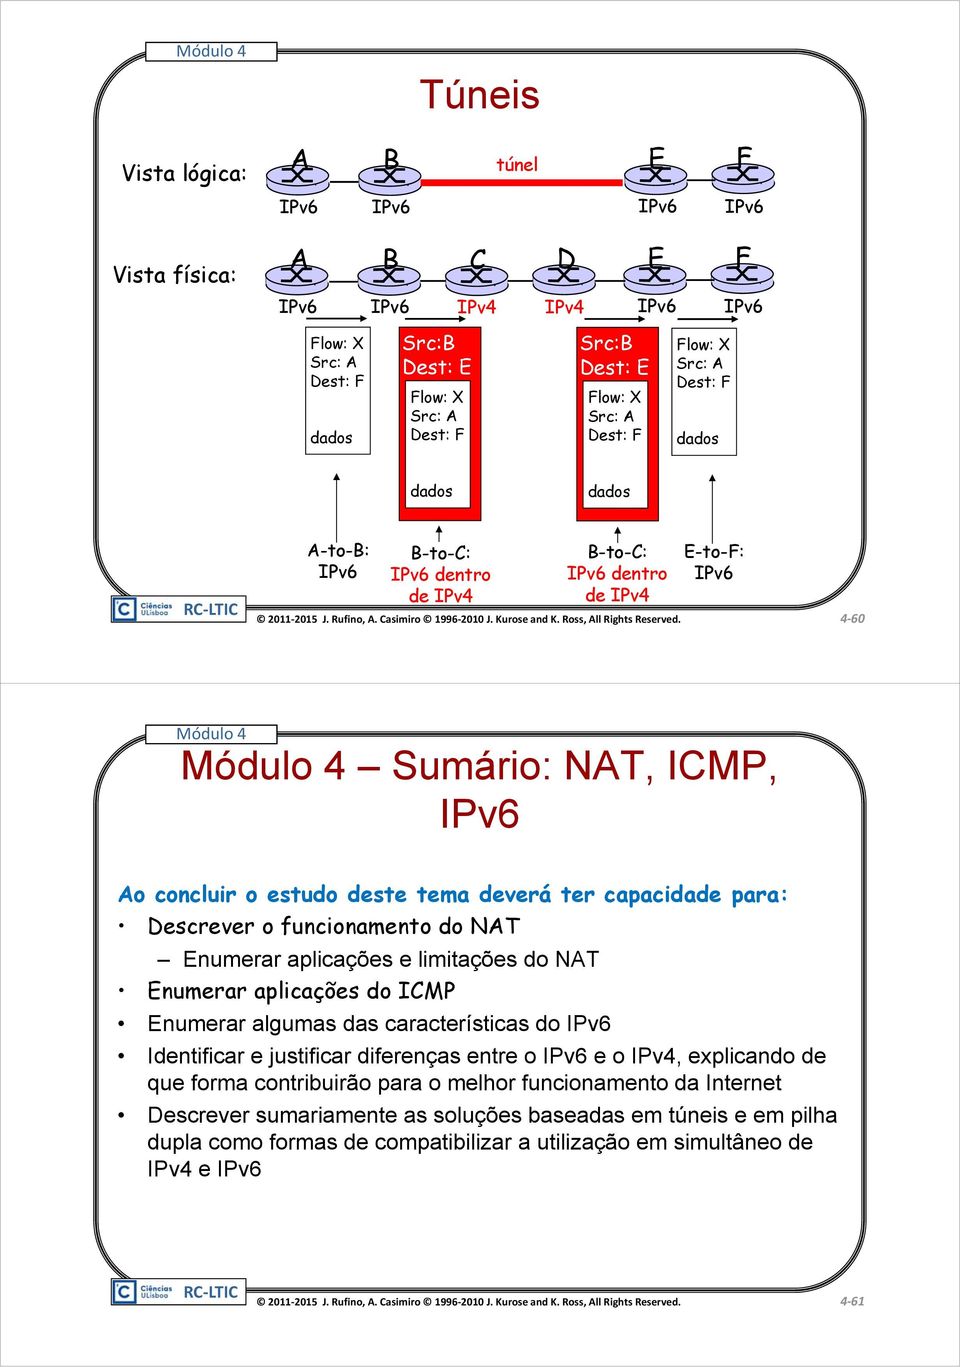 deverá ter capacidade para: Descrever o funcionamento do NAT Enumerar aplicações e limitações do NAT Enumerar aplicações do ICMP Enumerar algumas das características do IPv6 Identificar e justificar